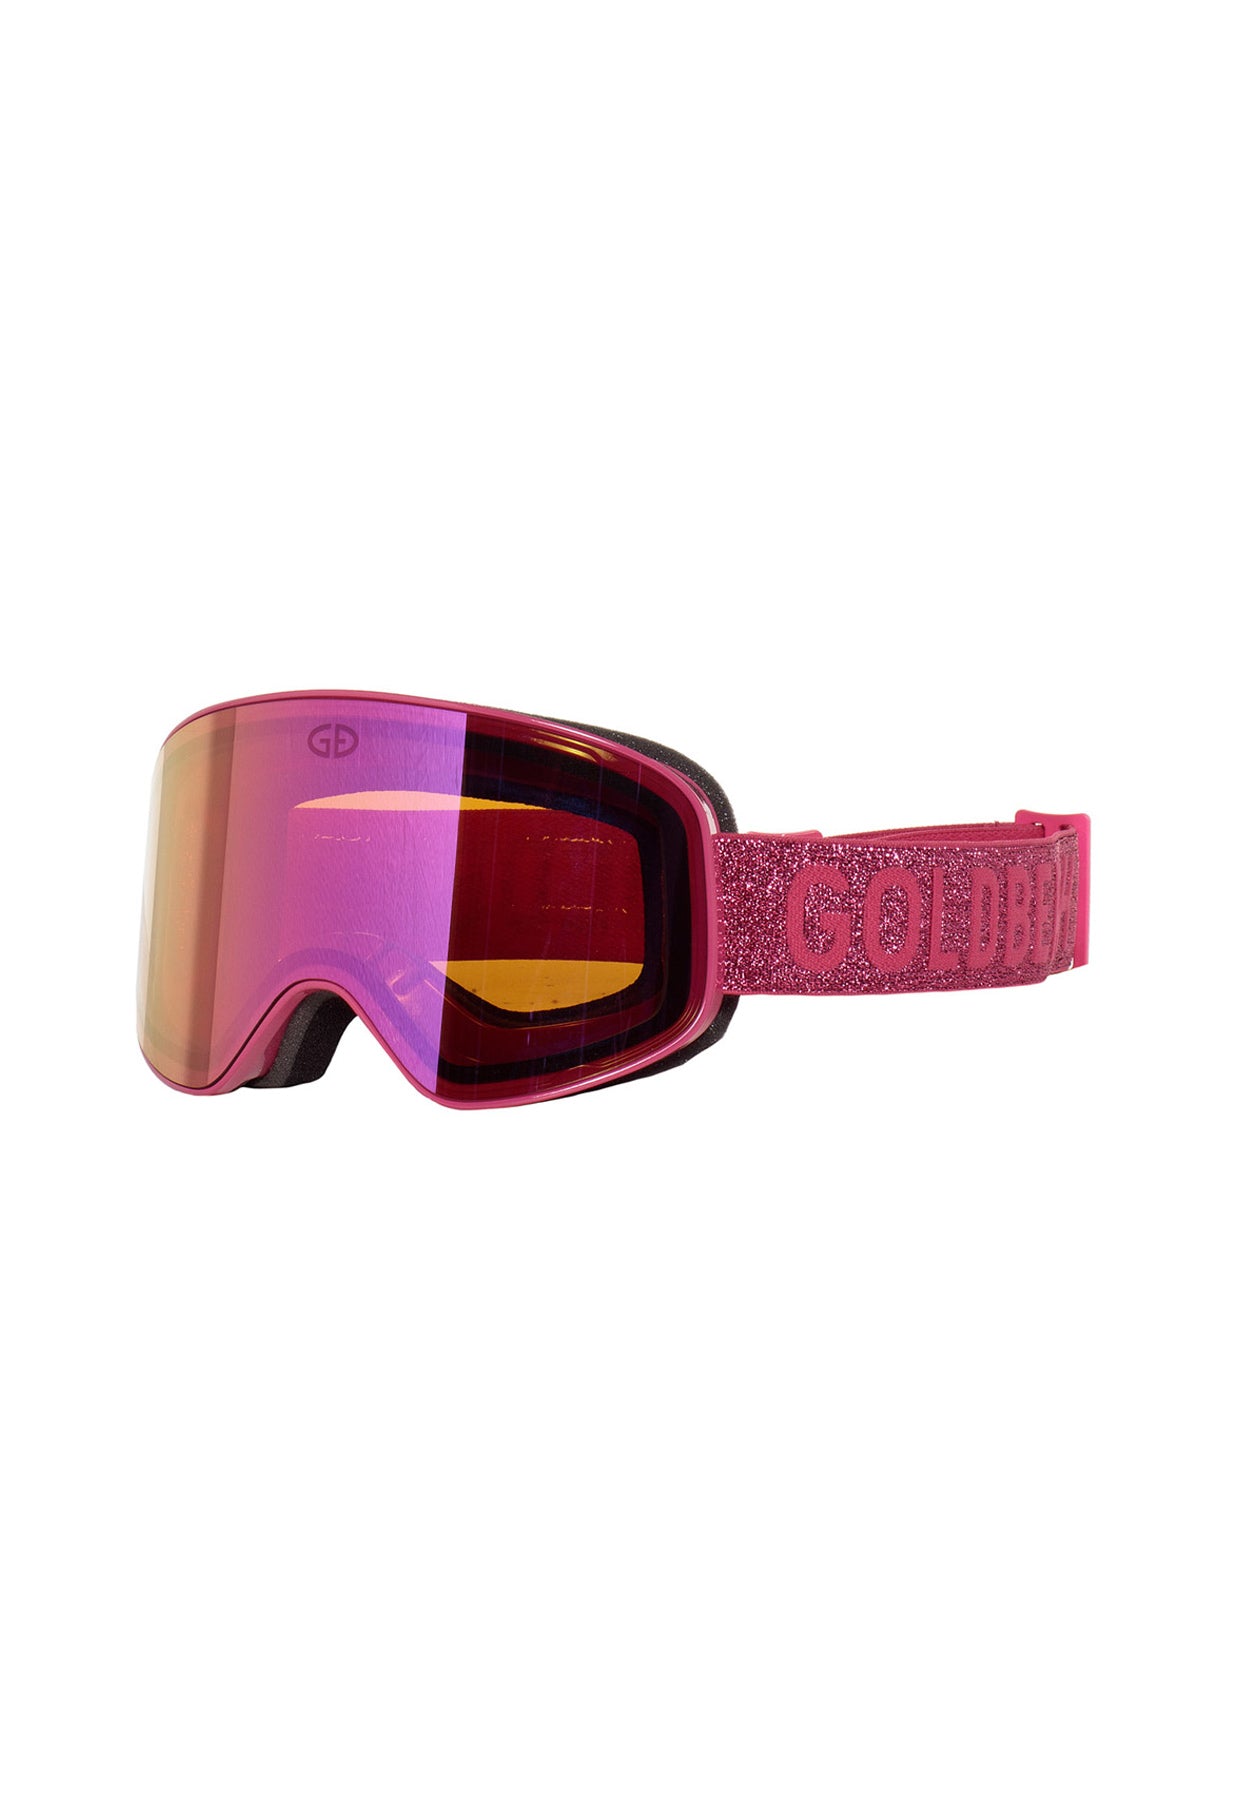 Goldbergh Headturner Ski Goggle in Pink